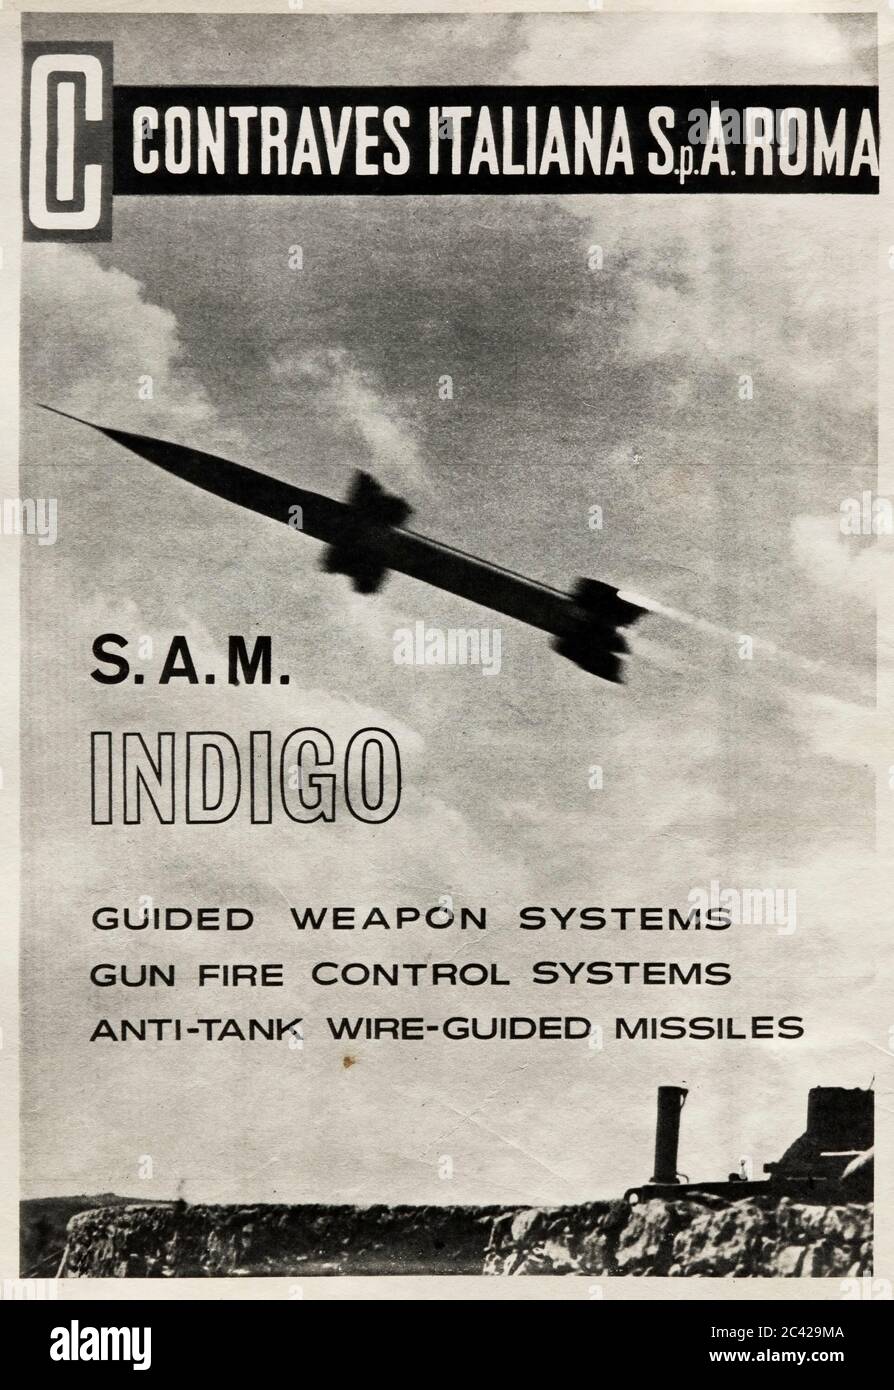 Pubblicità vintage per il missile italiano guidato Indigo. Foto Stock